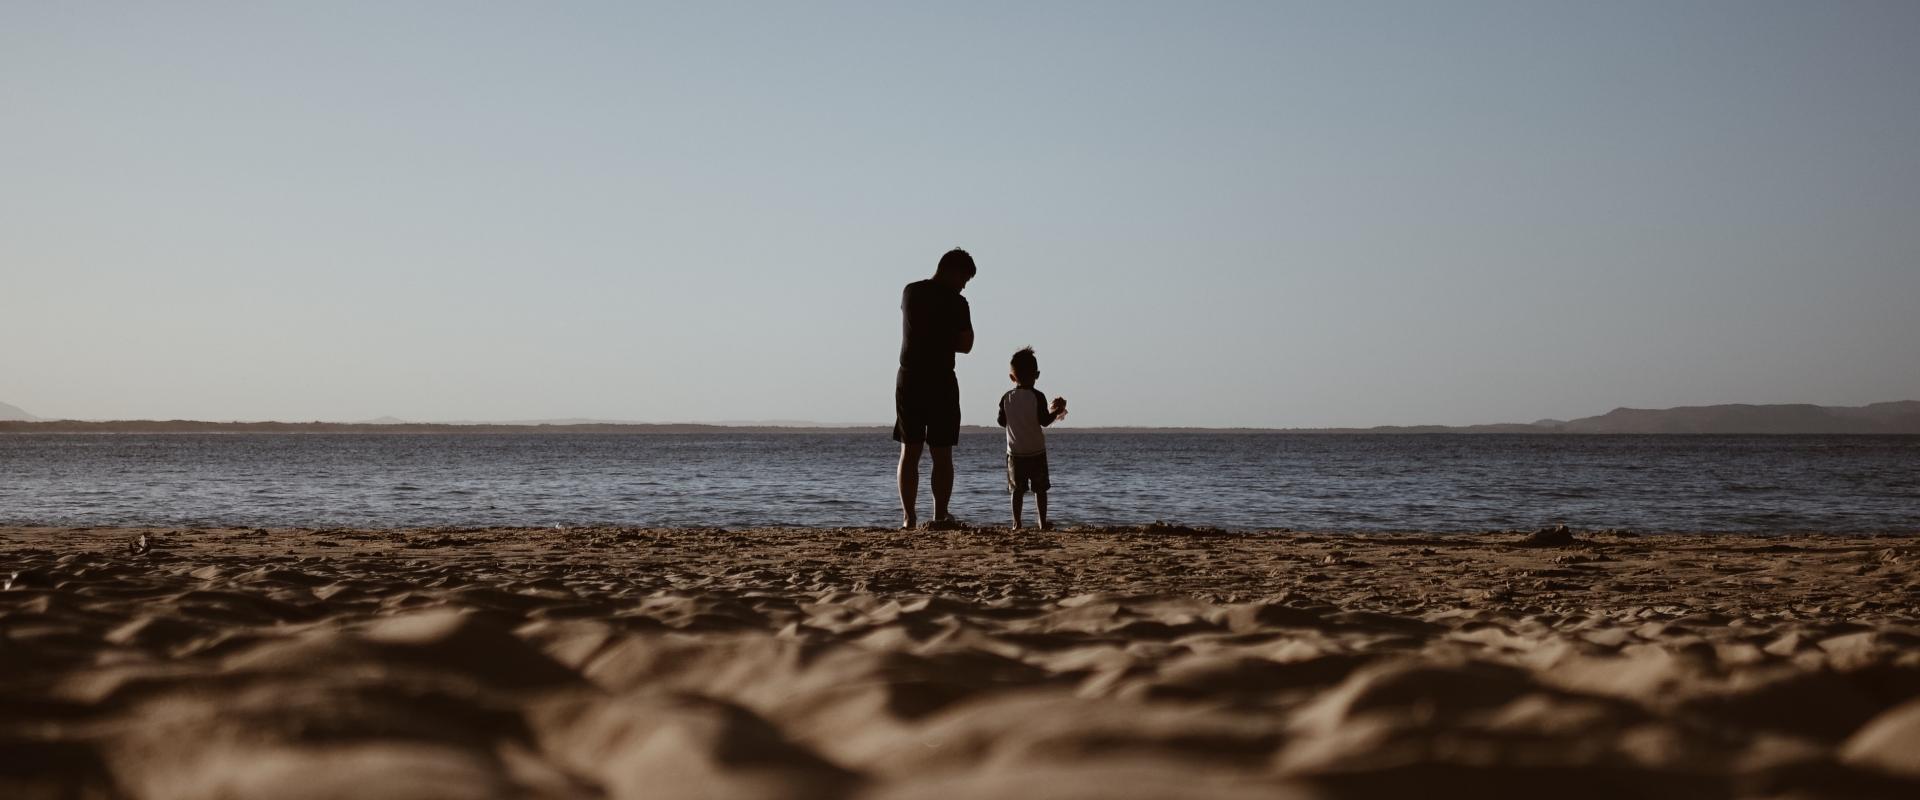 Enfant et adulte sur une plage